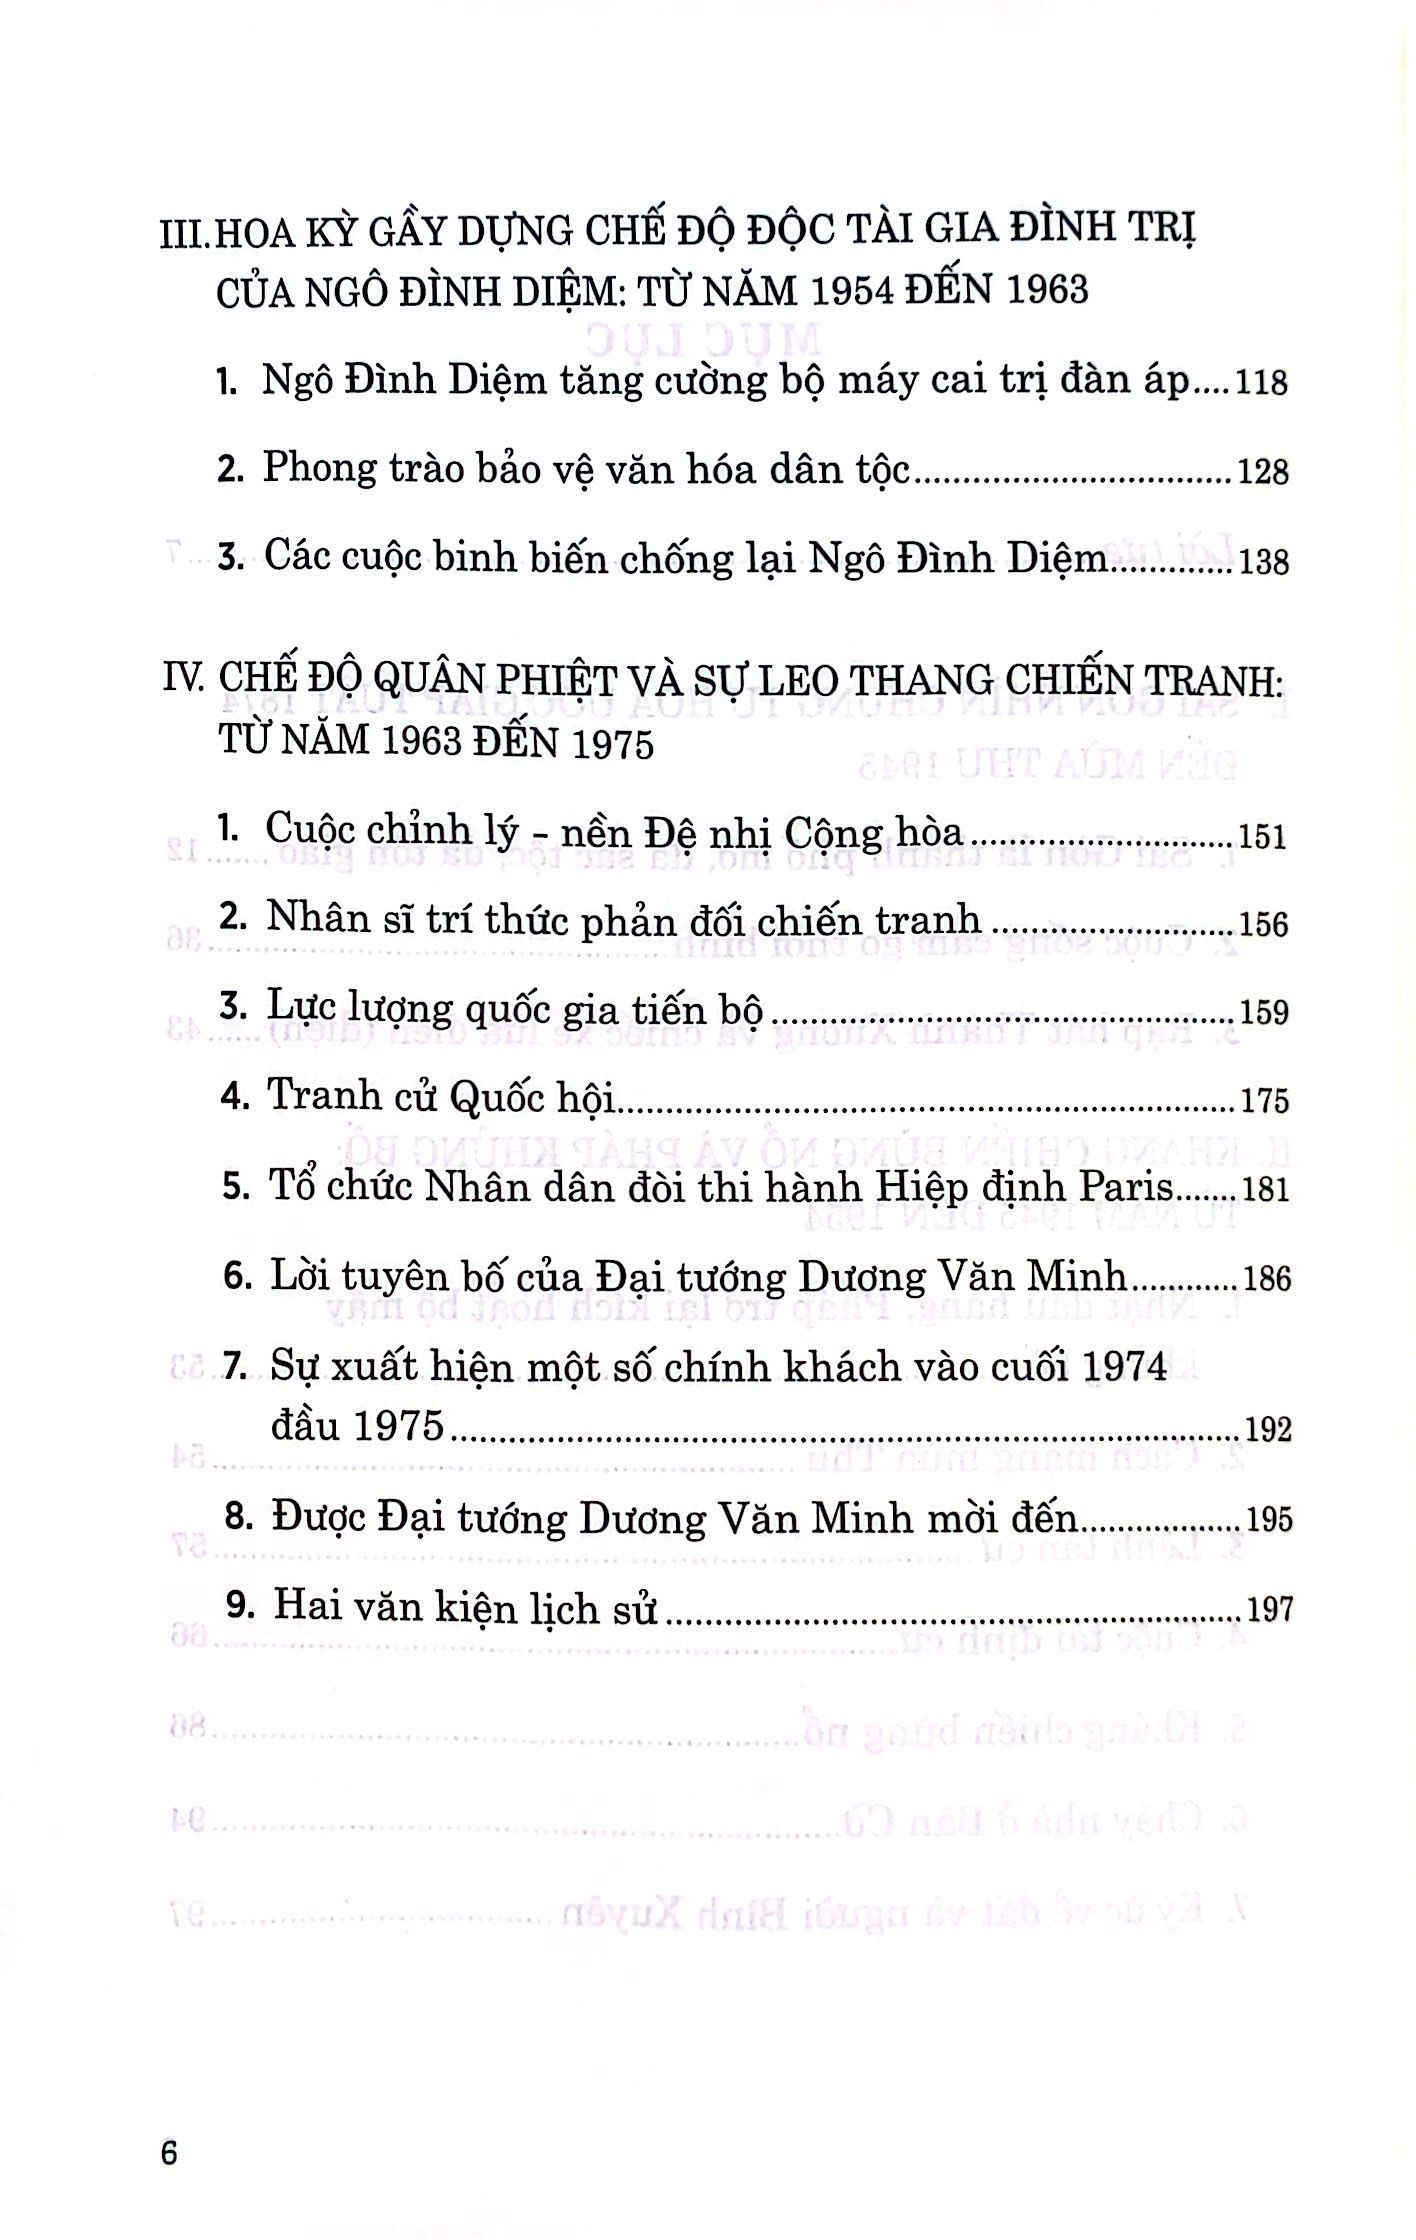 Hồi Ức Sài Gòn Thời Chiến Tranh PDF